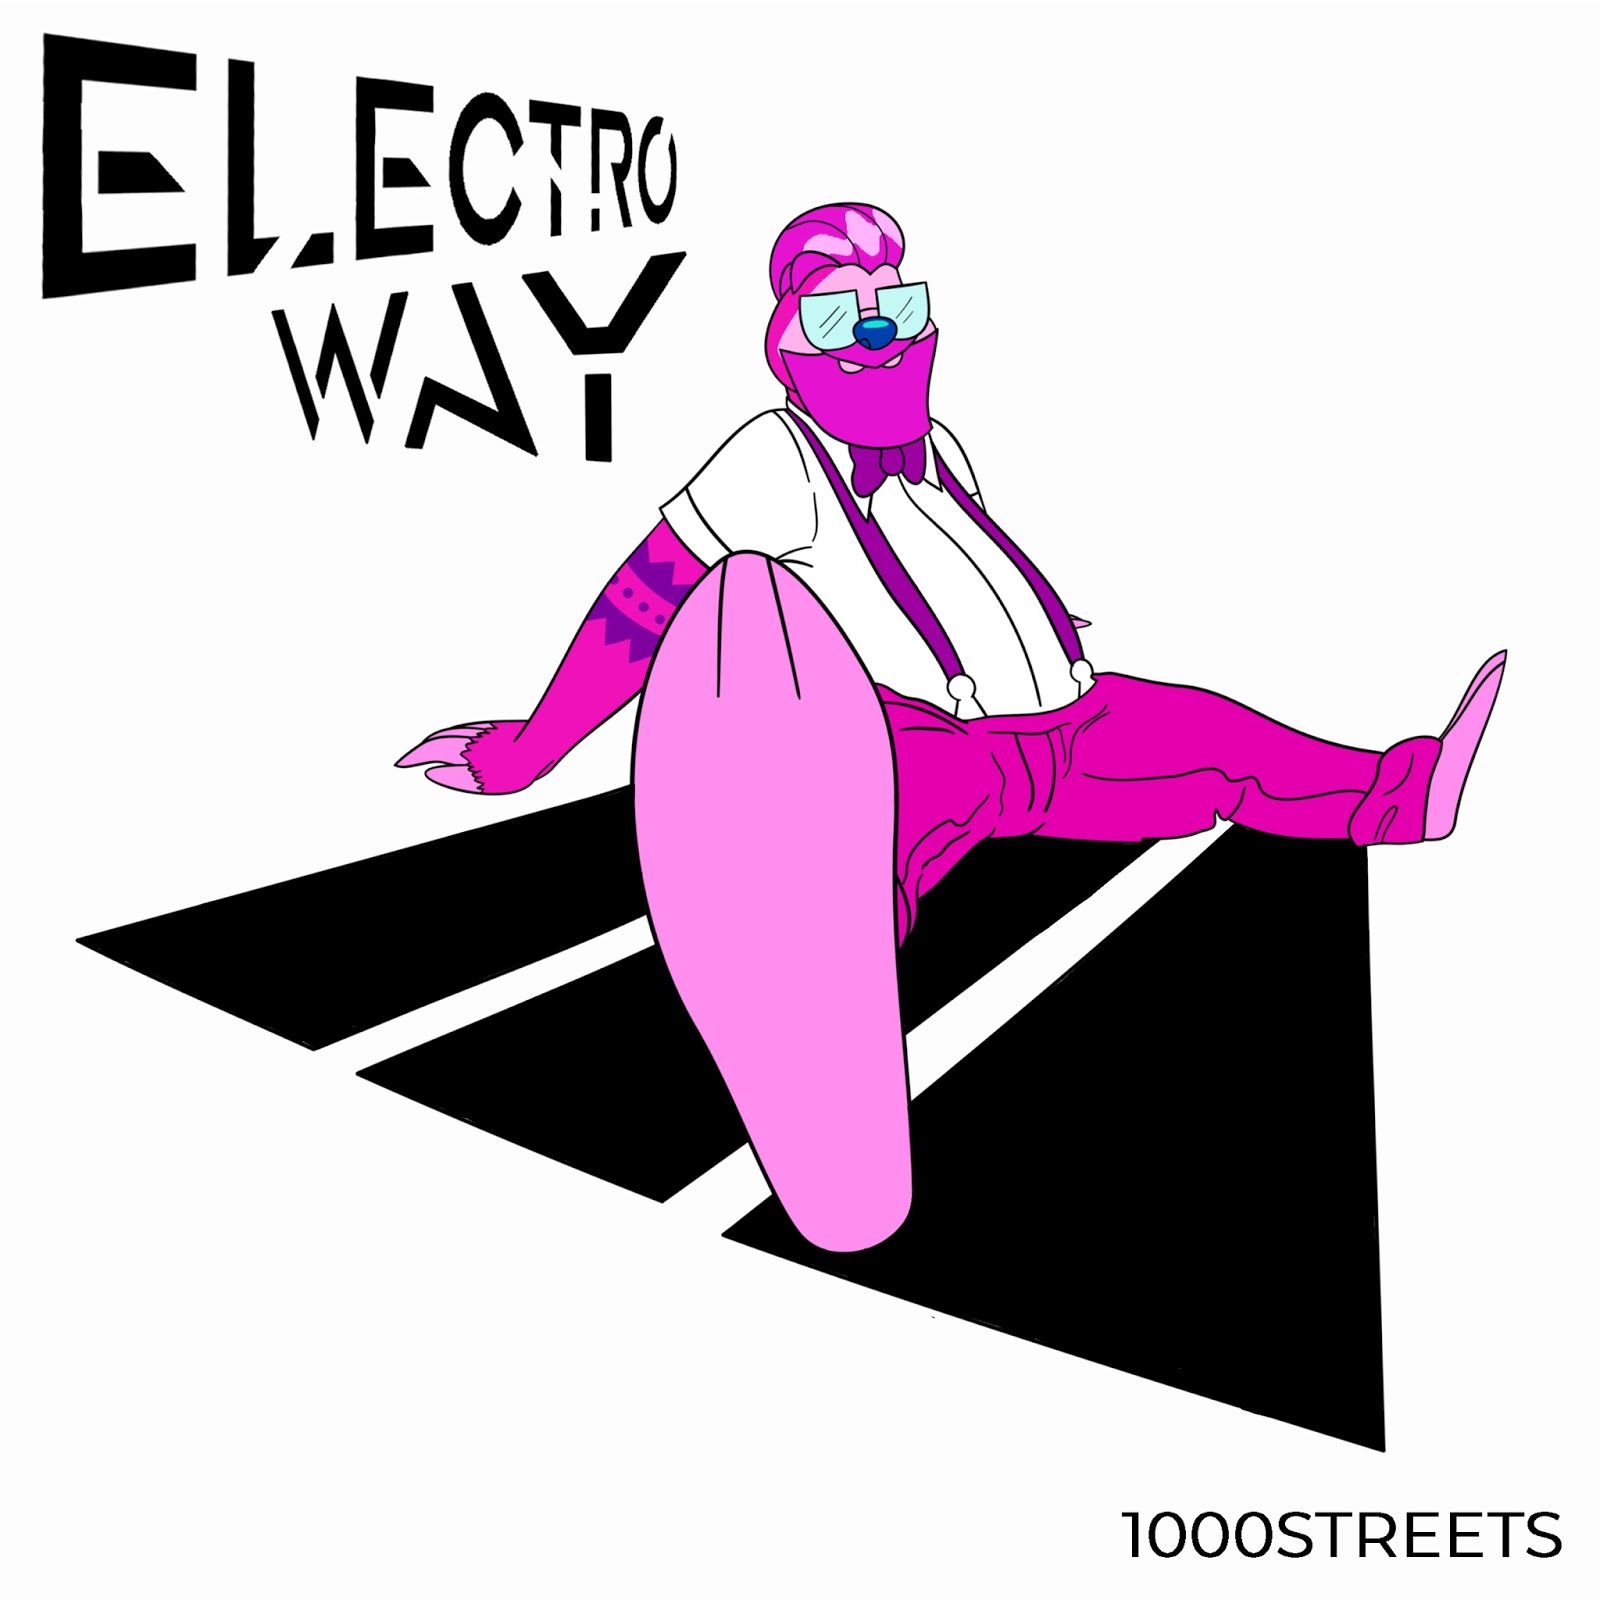 Foto 1 - 1000STREETS “Electro Way” è il primo album dal sound electroswing e Lo-fi/chill out di una delle orchestre più apprezzate d'Italia